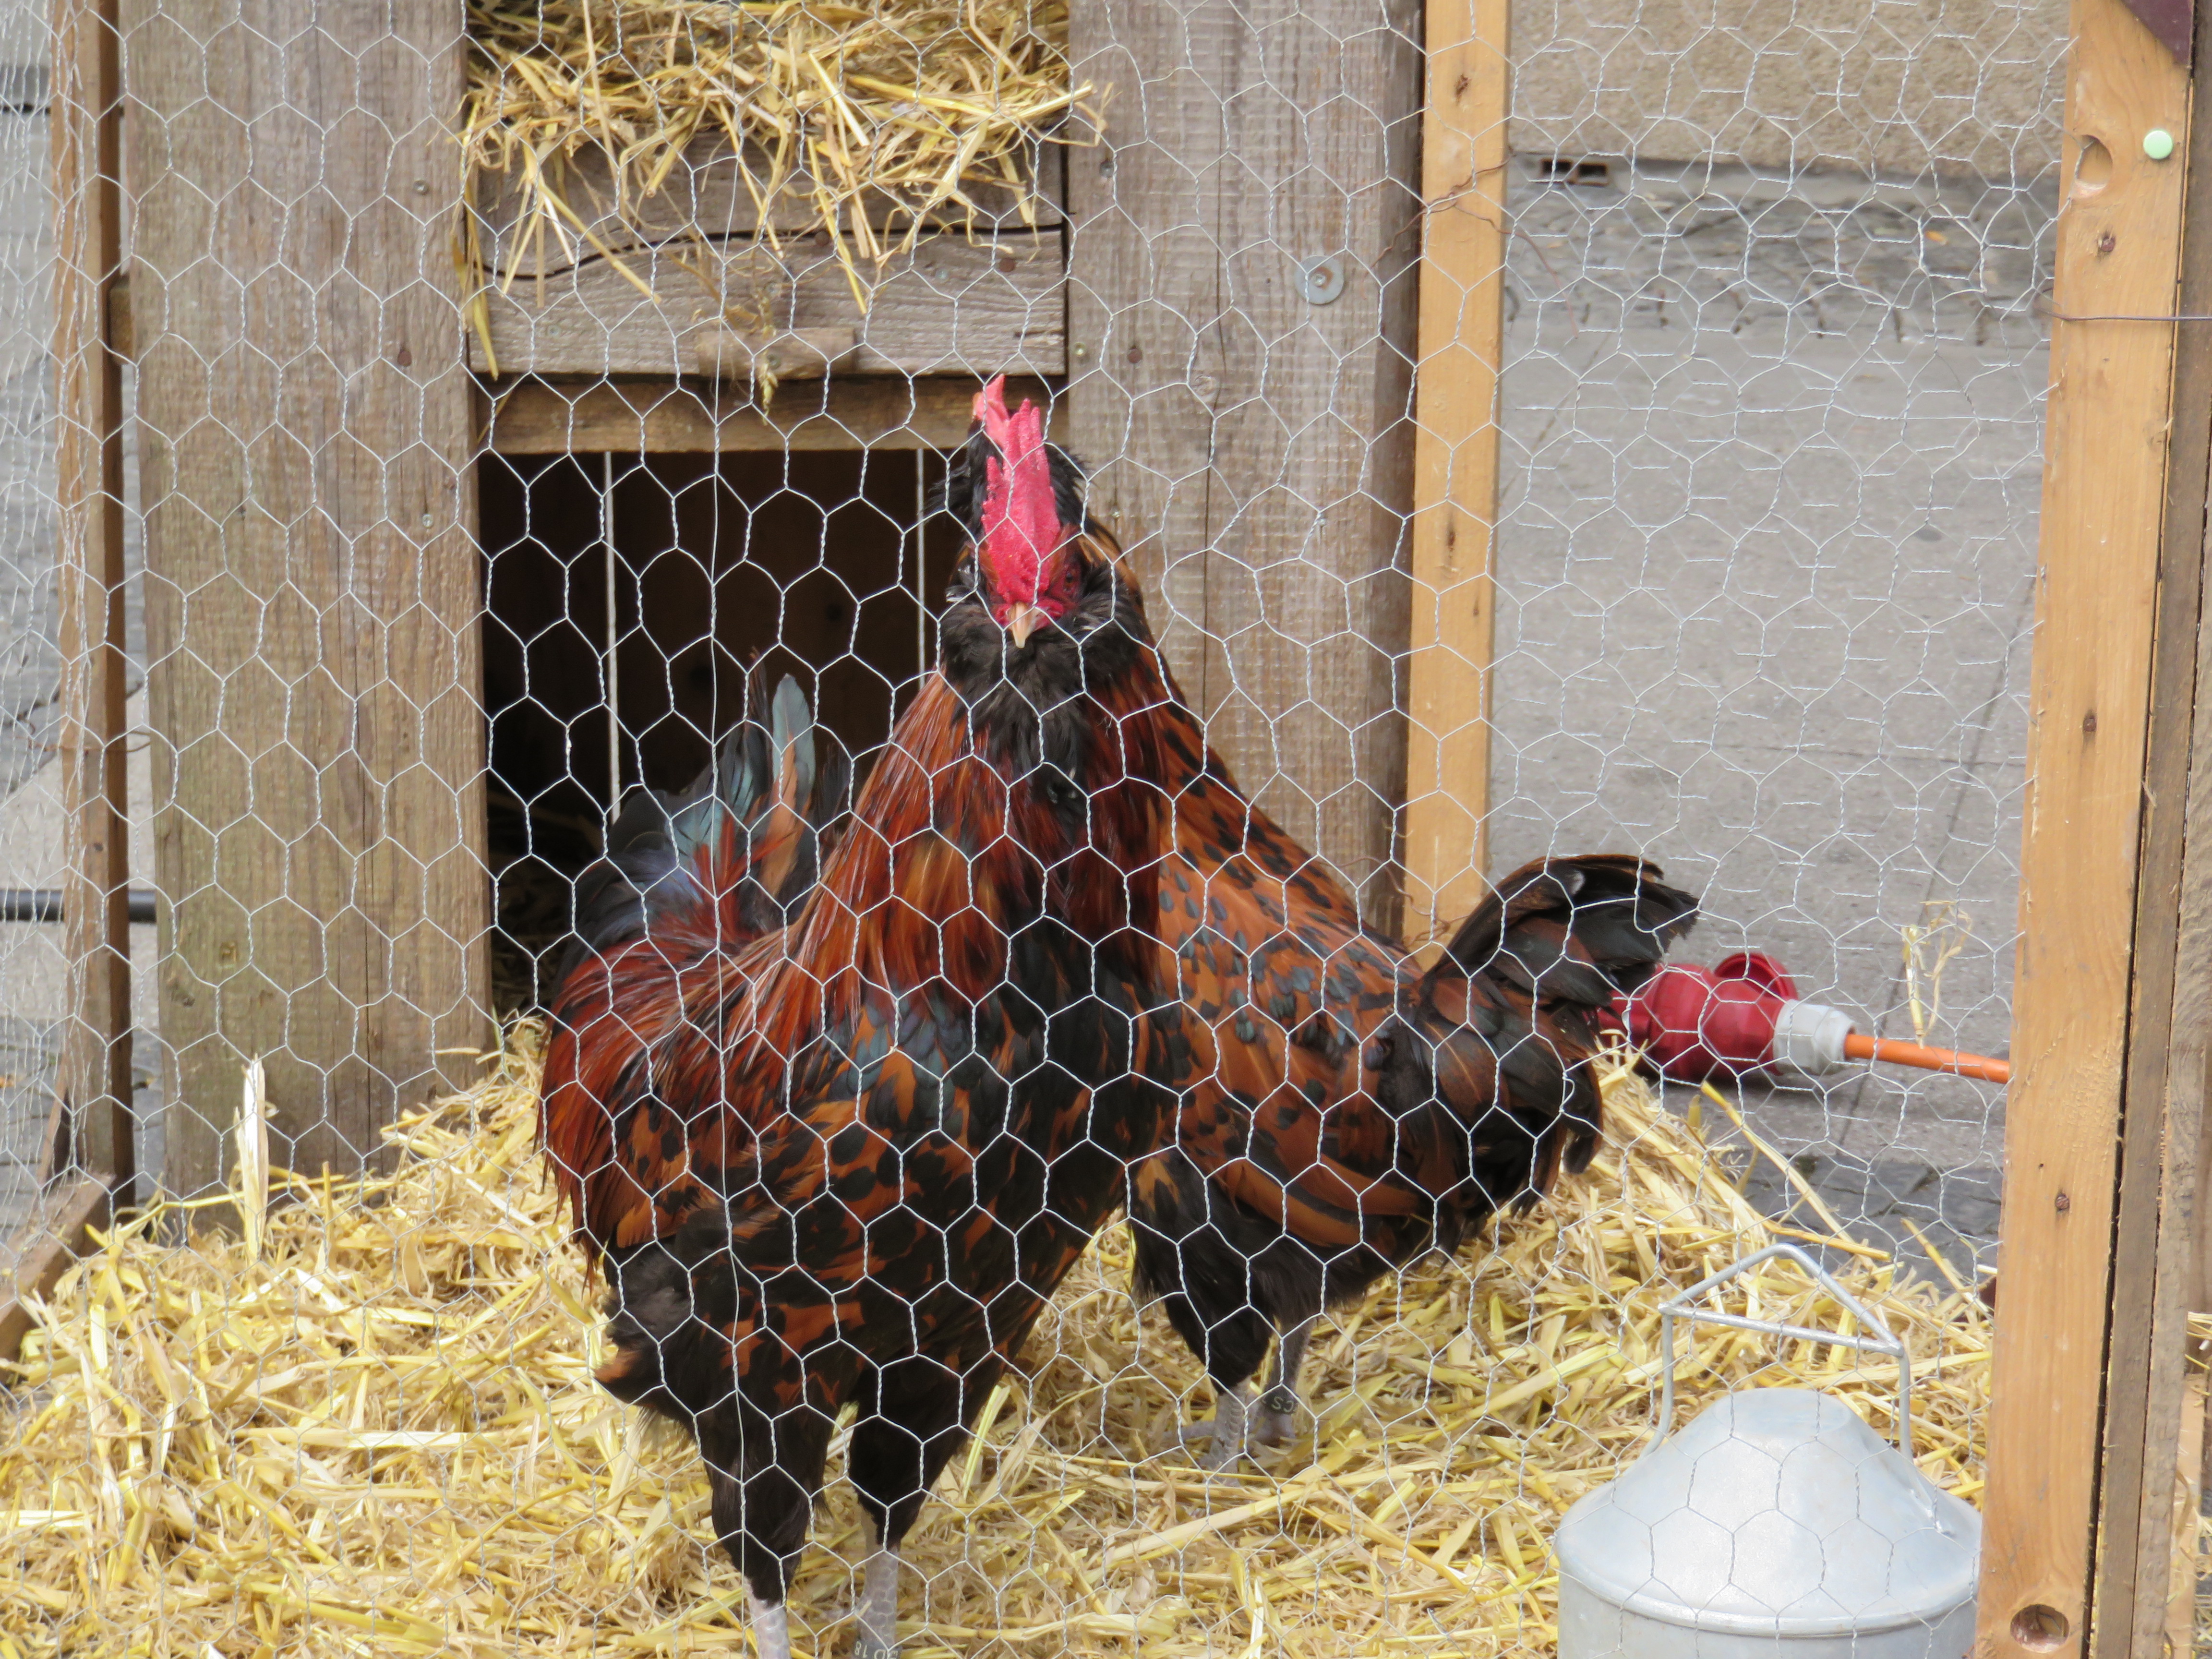 Hühner mit braun-schwarzem Gefieder